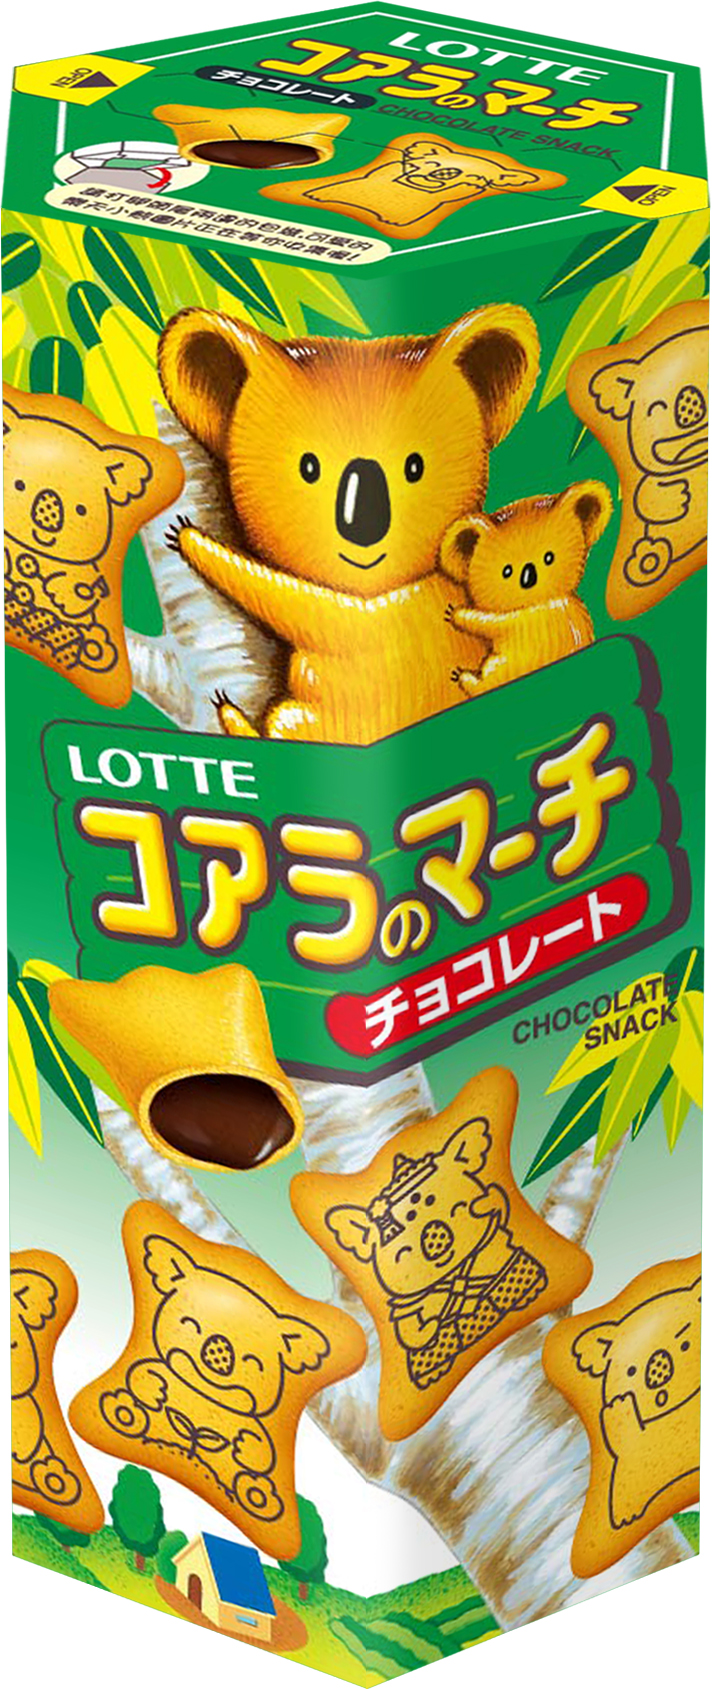 樂天小熊餅-巧克力 37g/6盒